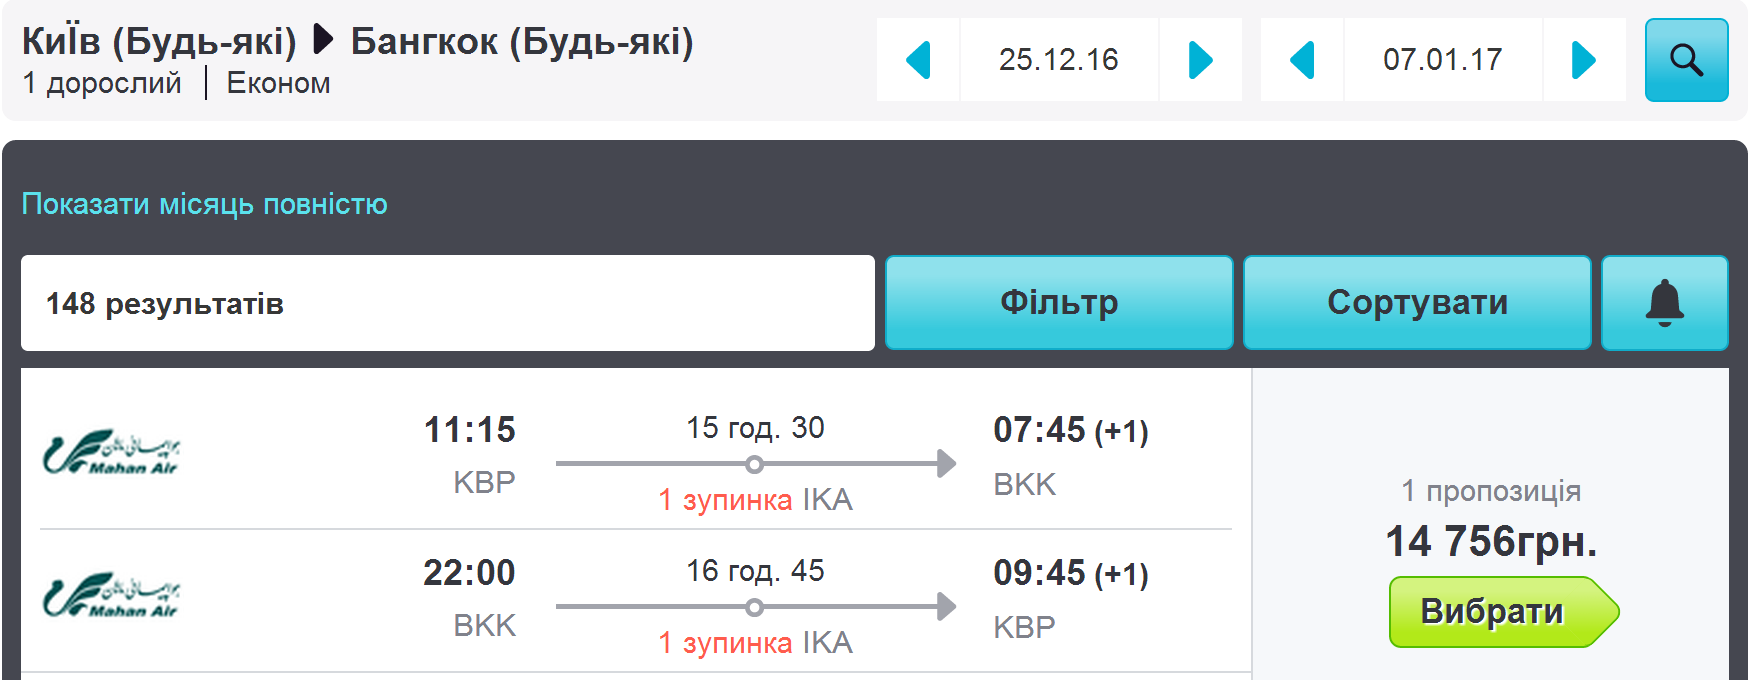 Авиабилеты барнаул гоа билеты красноярск симферополь на самолет прямой рейс